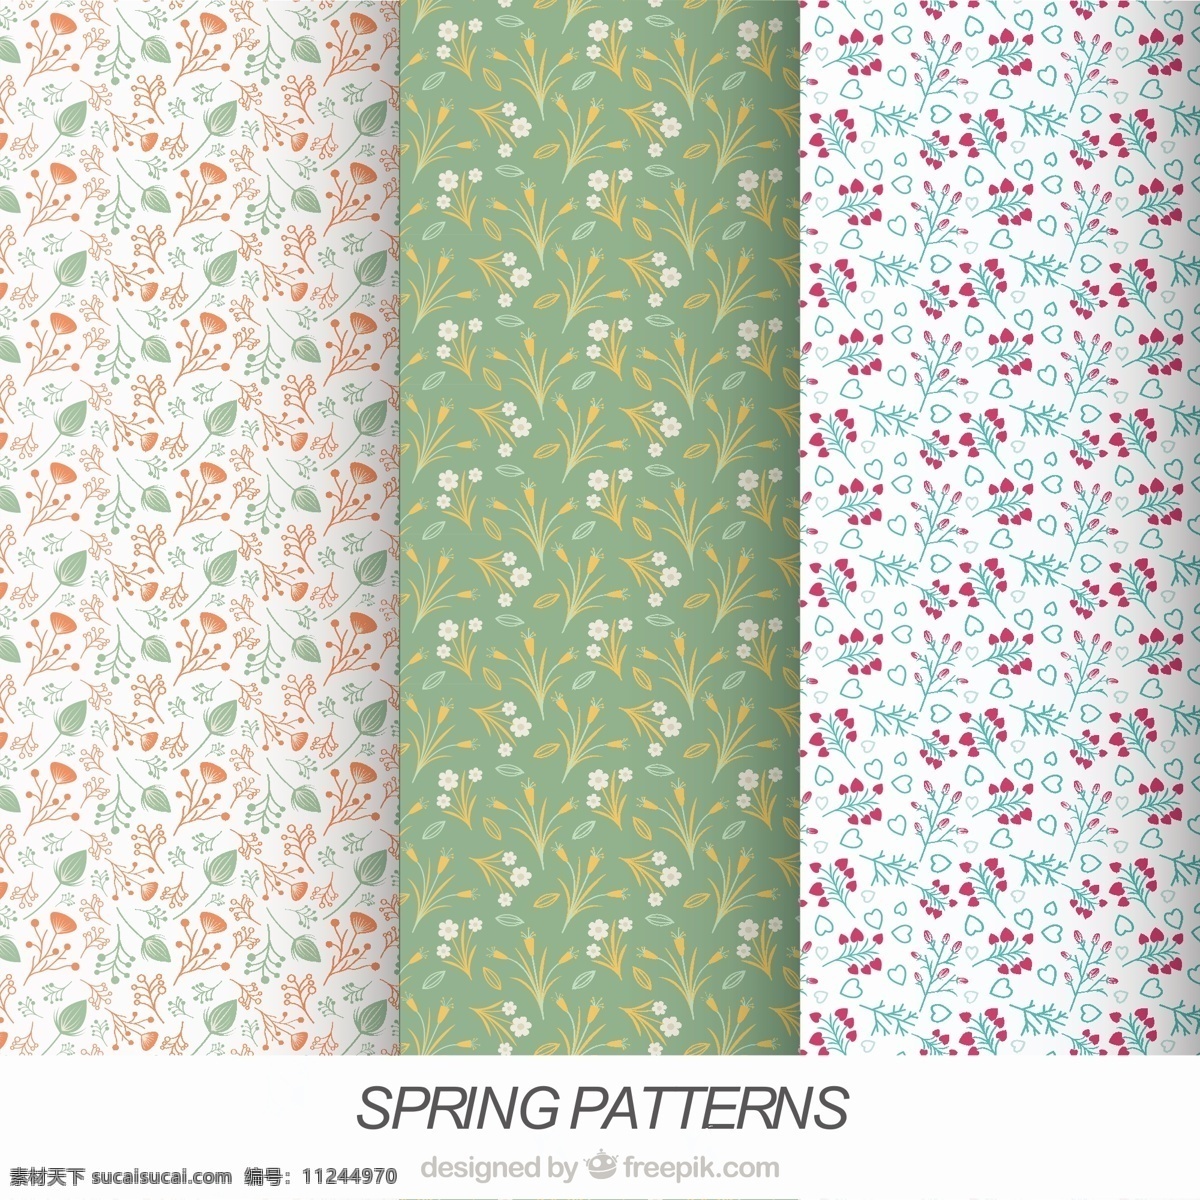 三 种 春季 花卉 图案 背景 自然 花卉背景 花卉图案 色彩 平面 植物 装饰 无缝模式